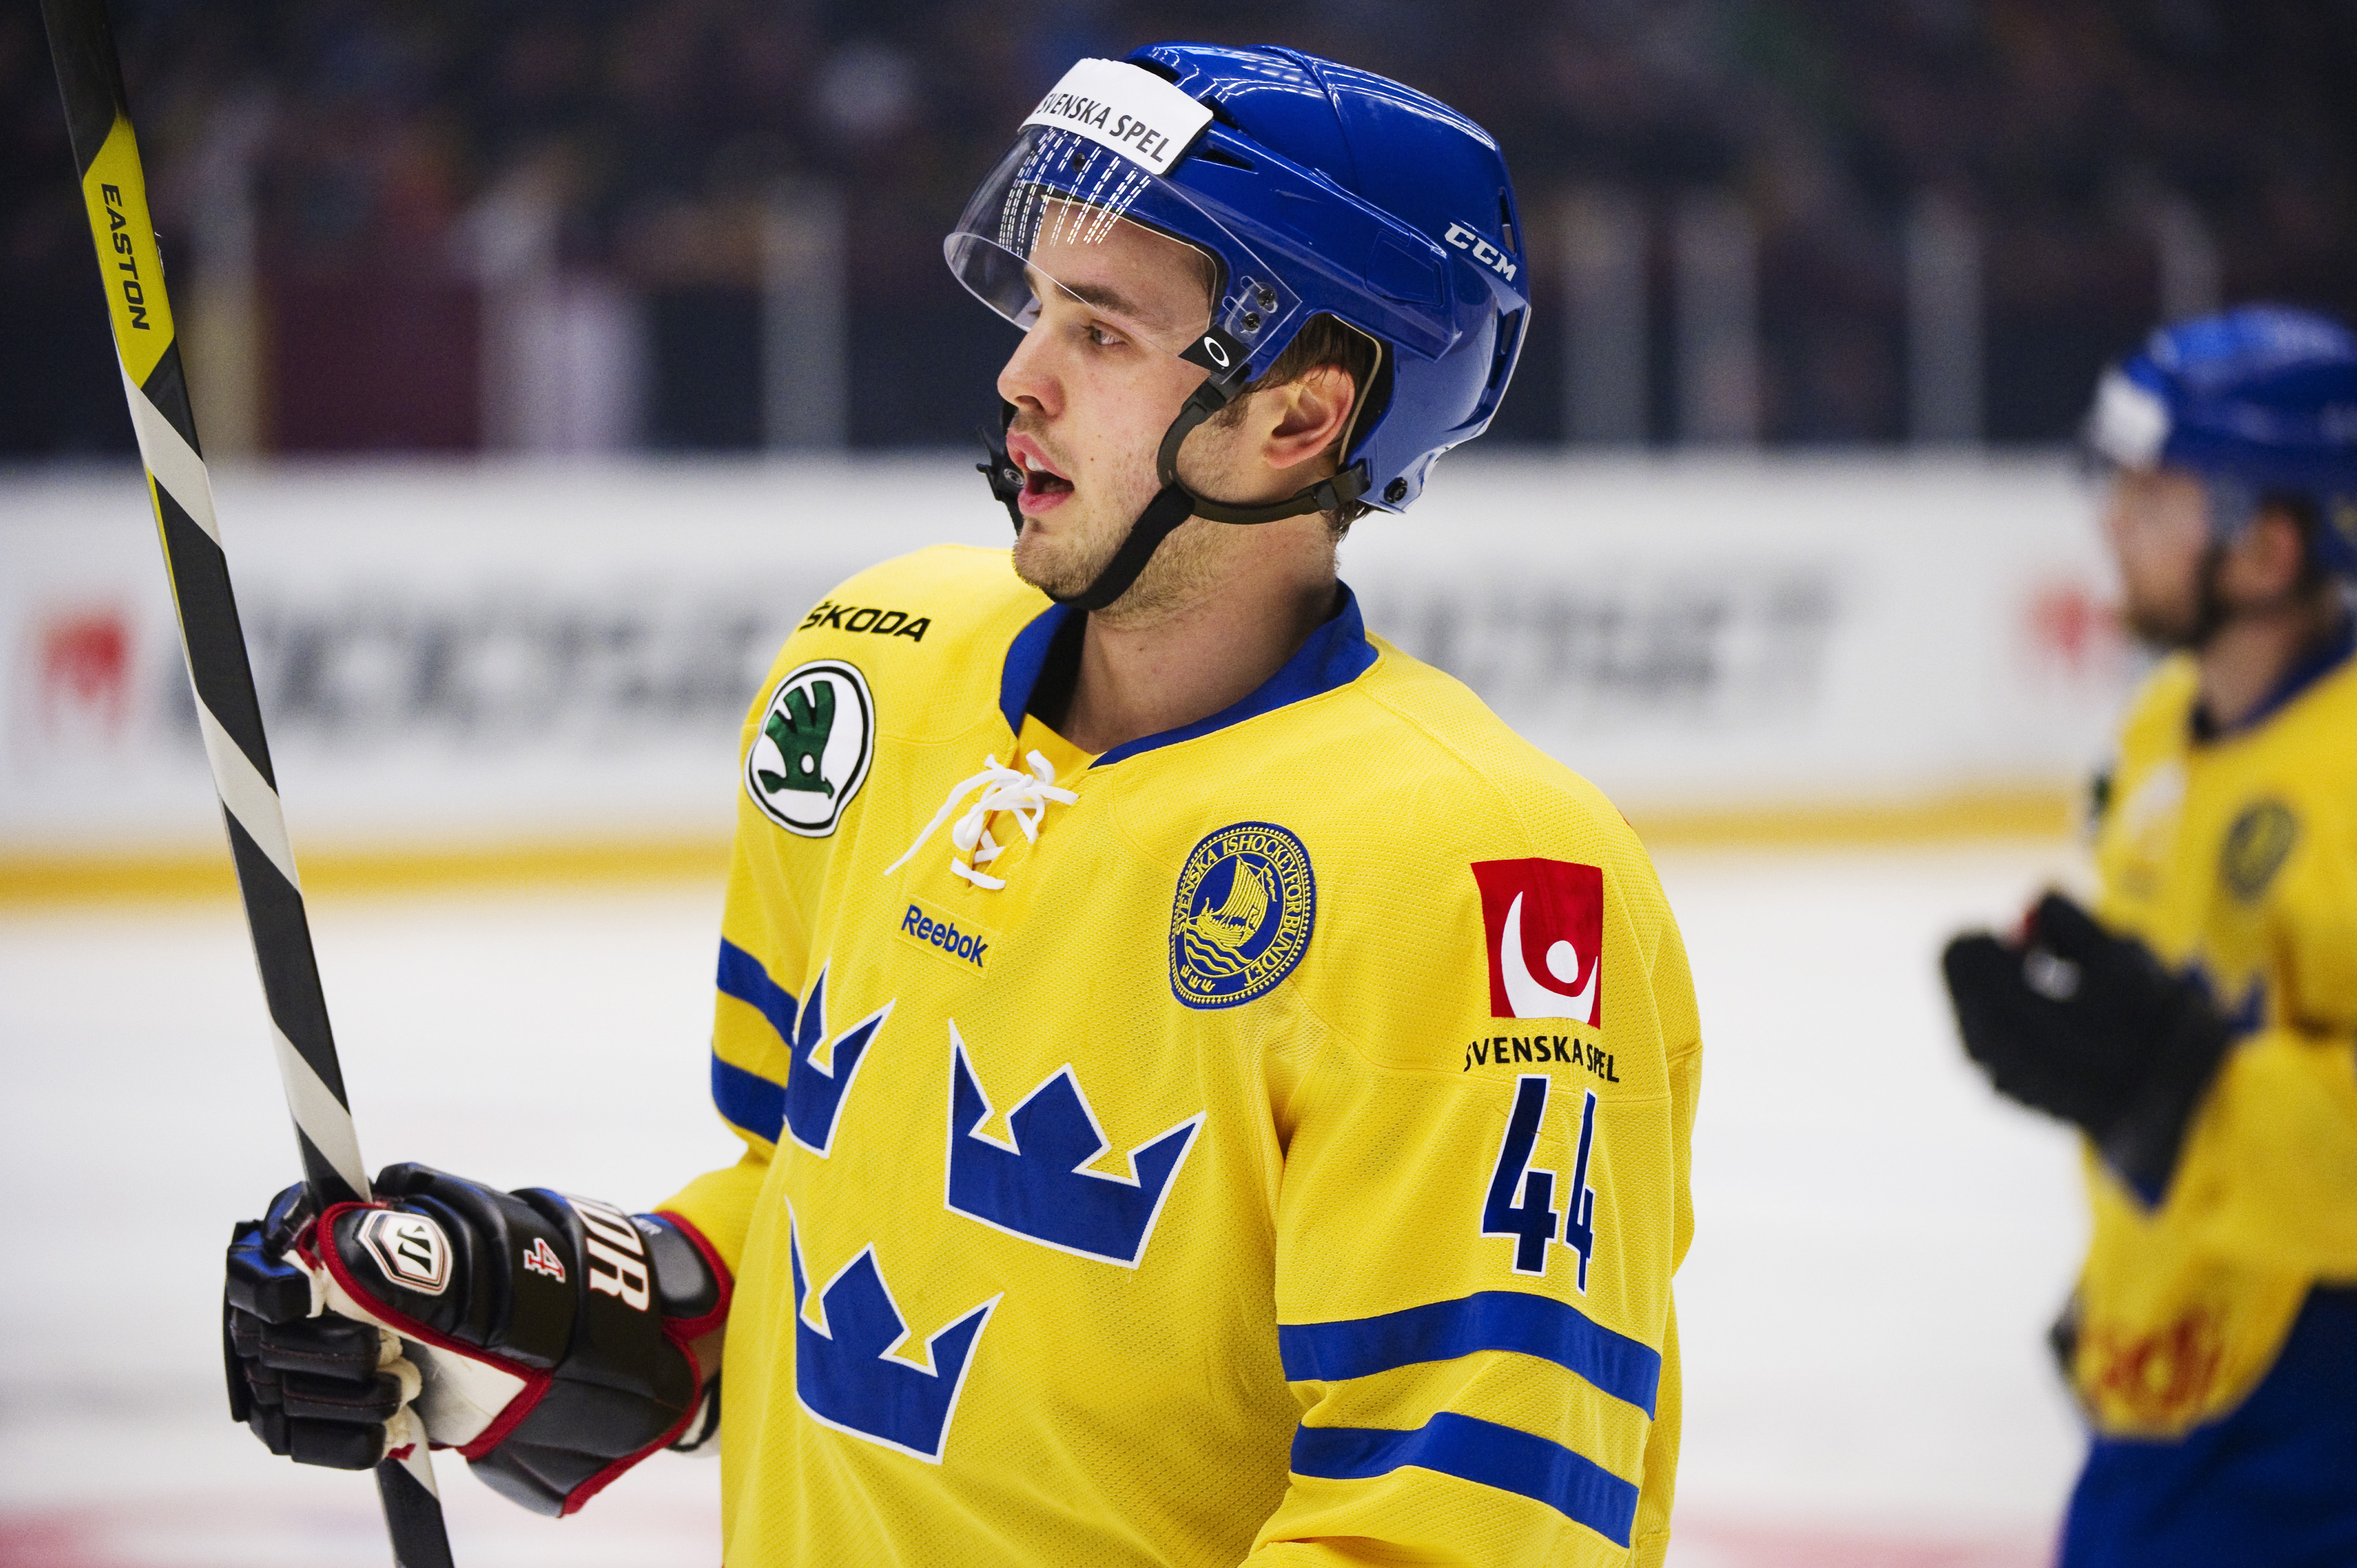 ishockey, Sverige, Tre Kronor, Tyskland, Niklas Hjalmarsson, Calle Jarnkrok